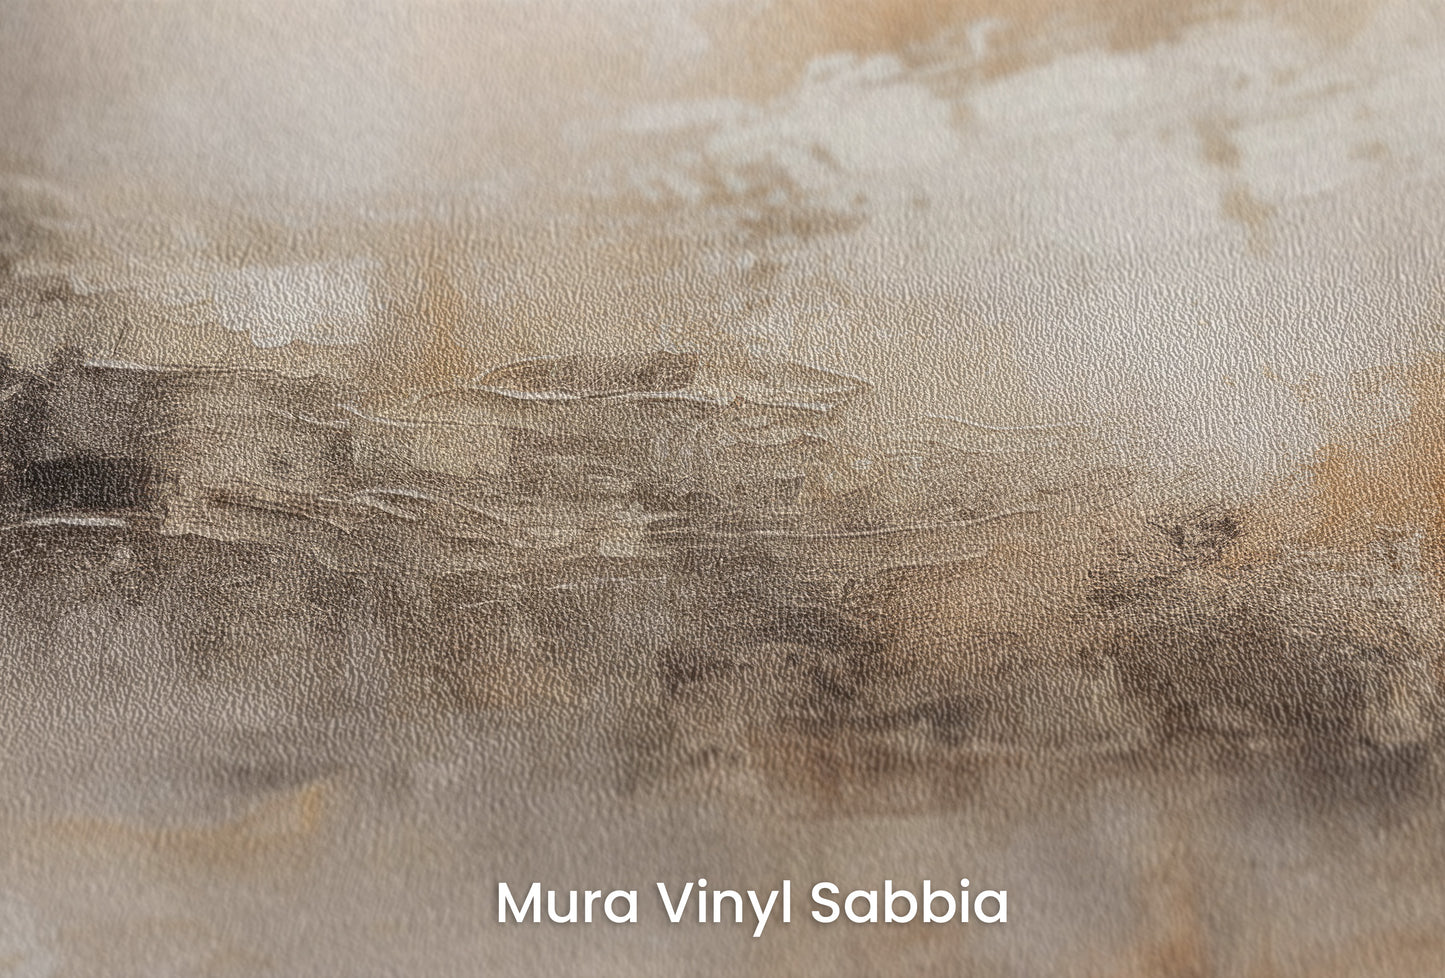 Zbliżenie na artystyczną fototapetę o nazwie ECHOES OF DAWN na podłożu Mura Vinyl Sabbia struktura grubego ziarna piasku.